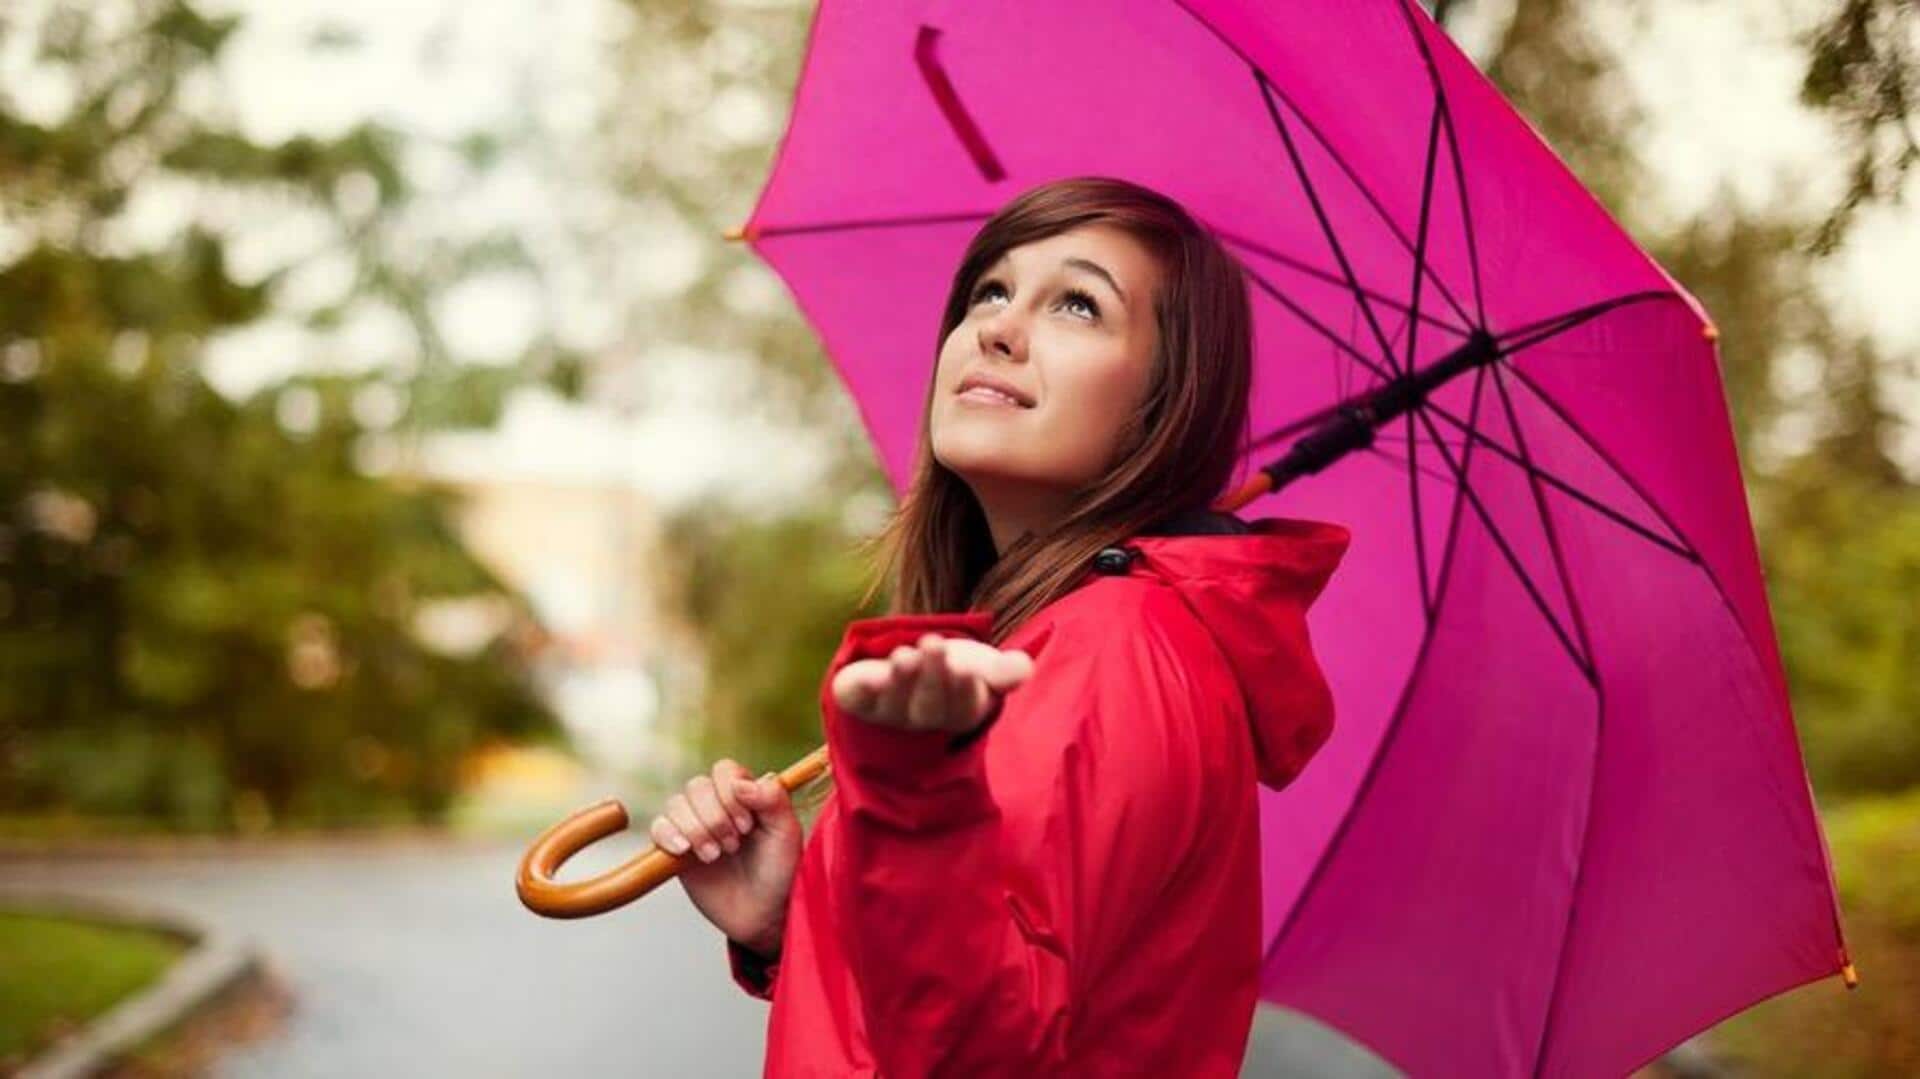 Grab these eco-friendly rainwear essentials